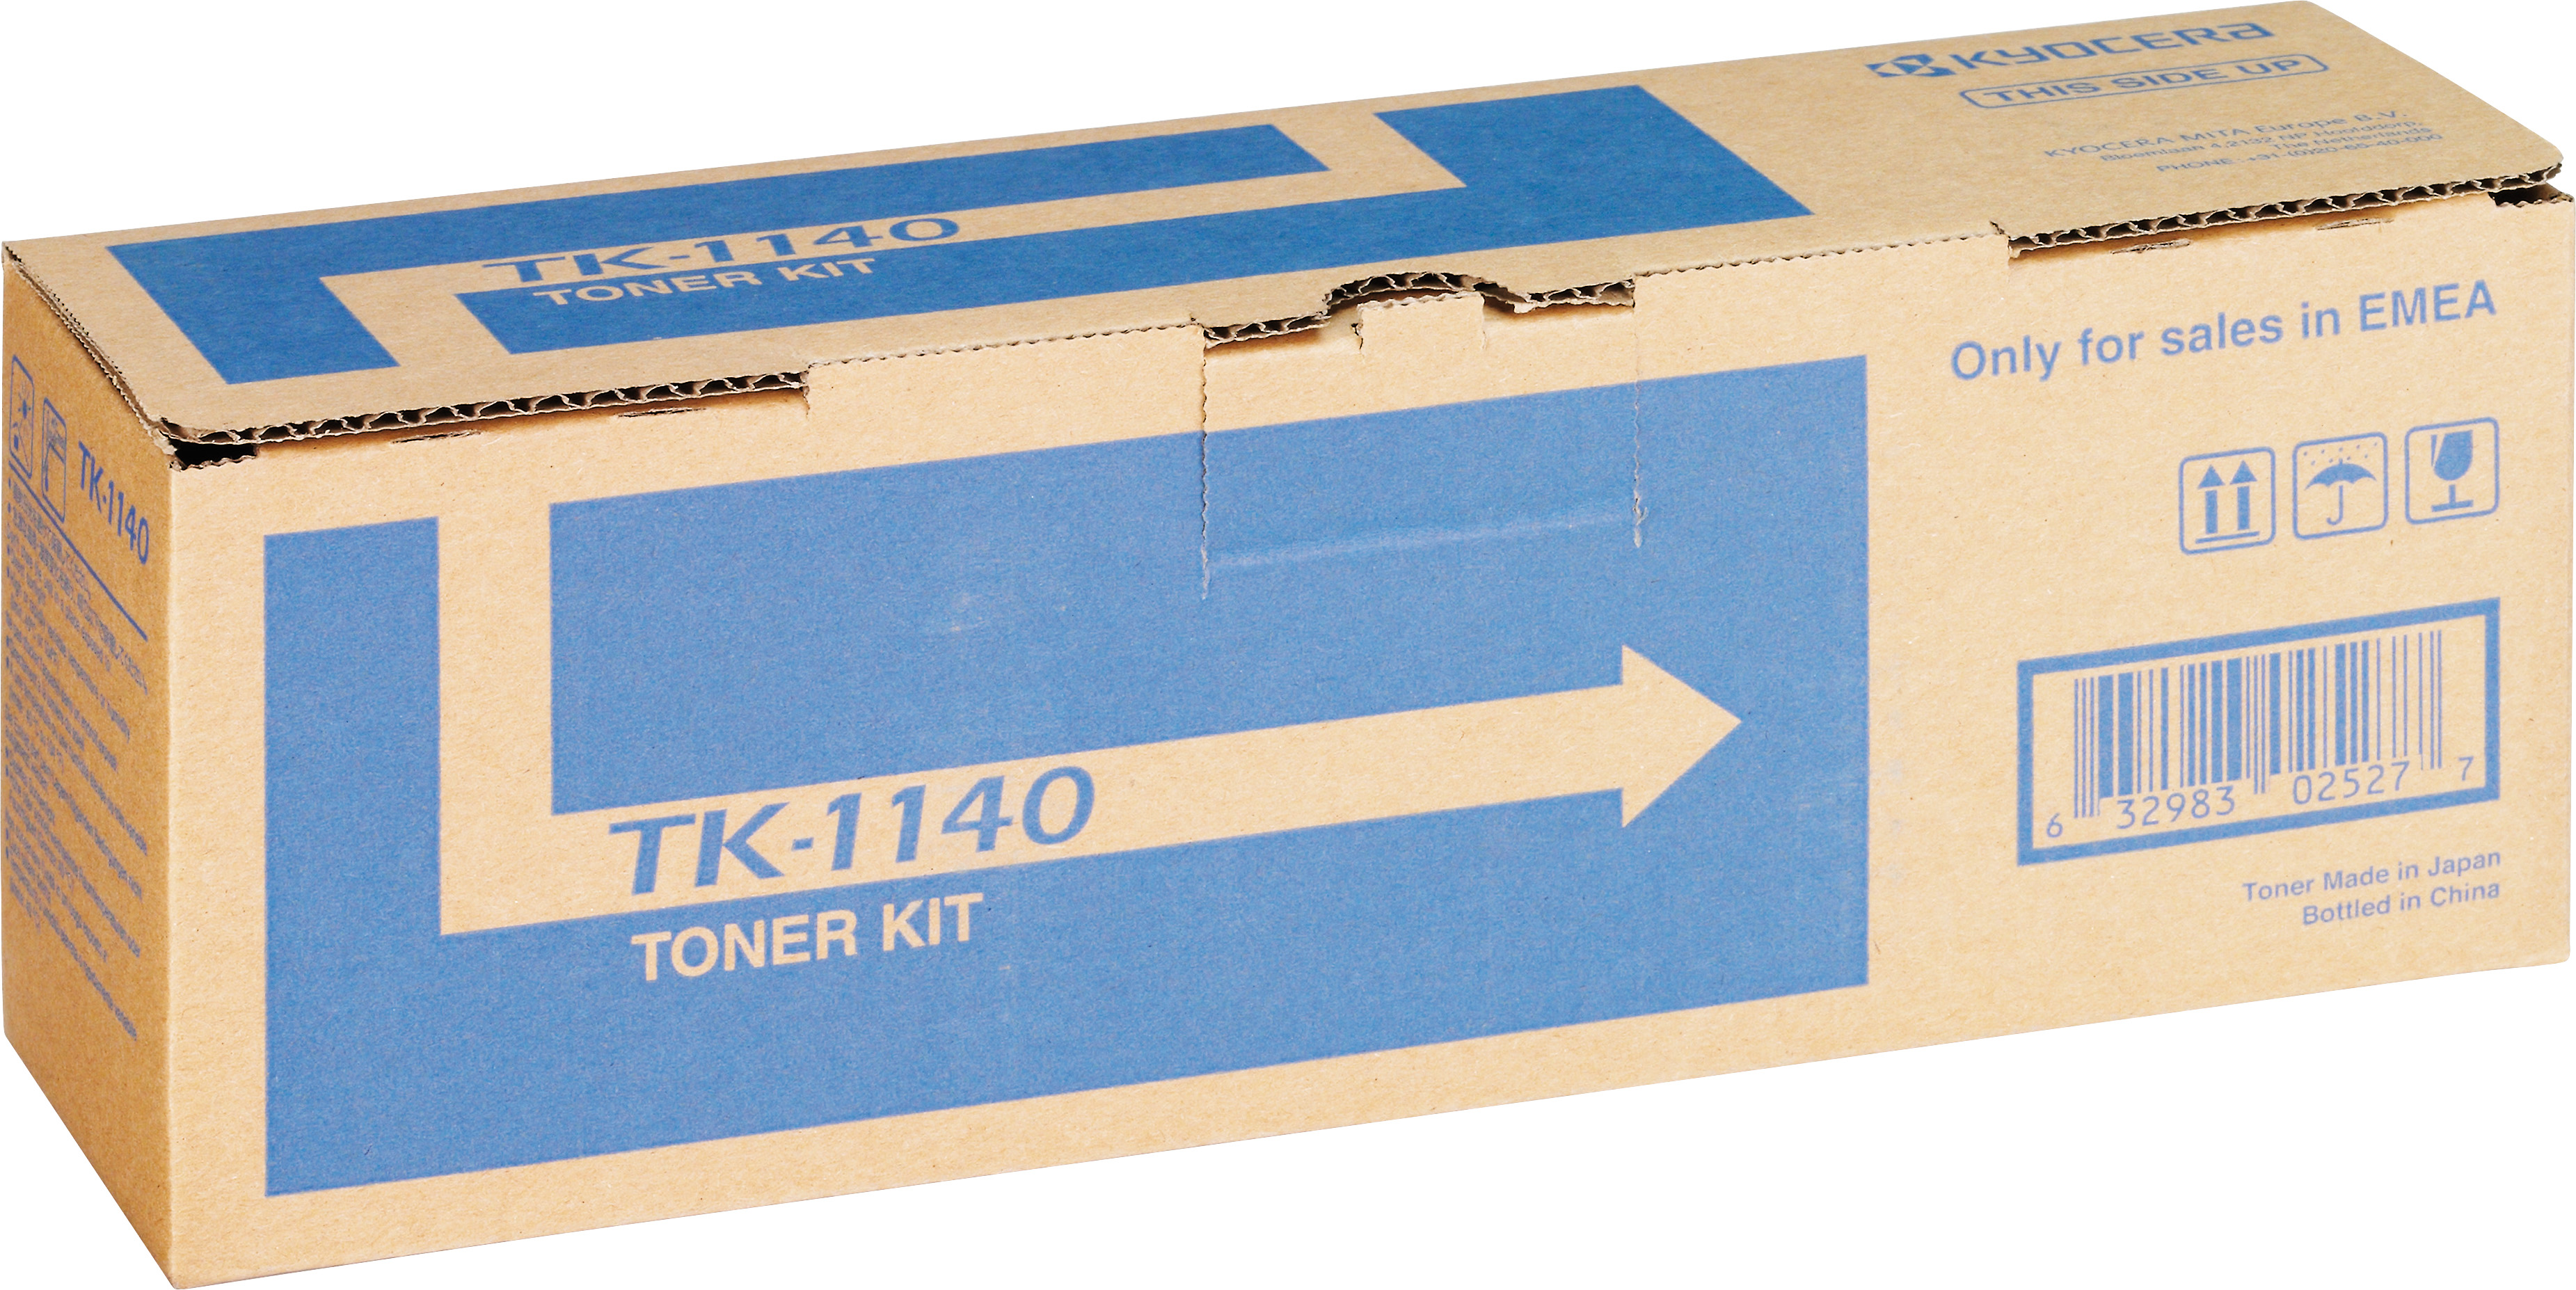 Kyocera Lasertoner TK-1140 schwarz 7.200 Seiten